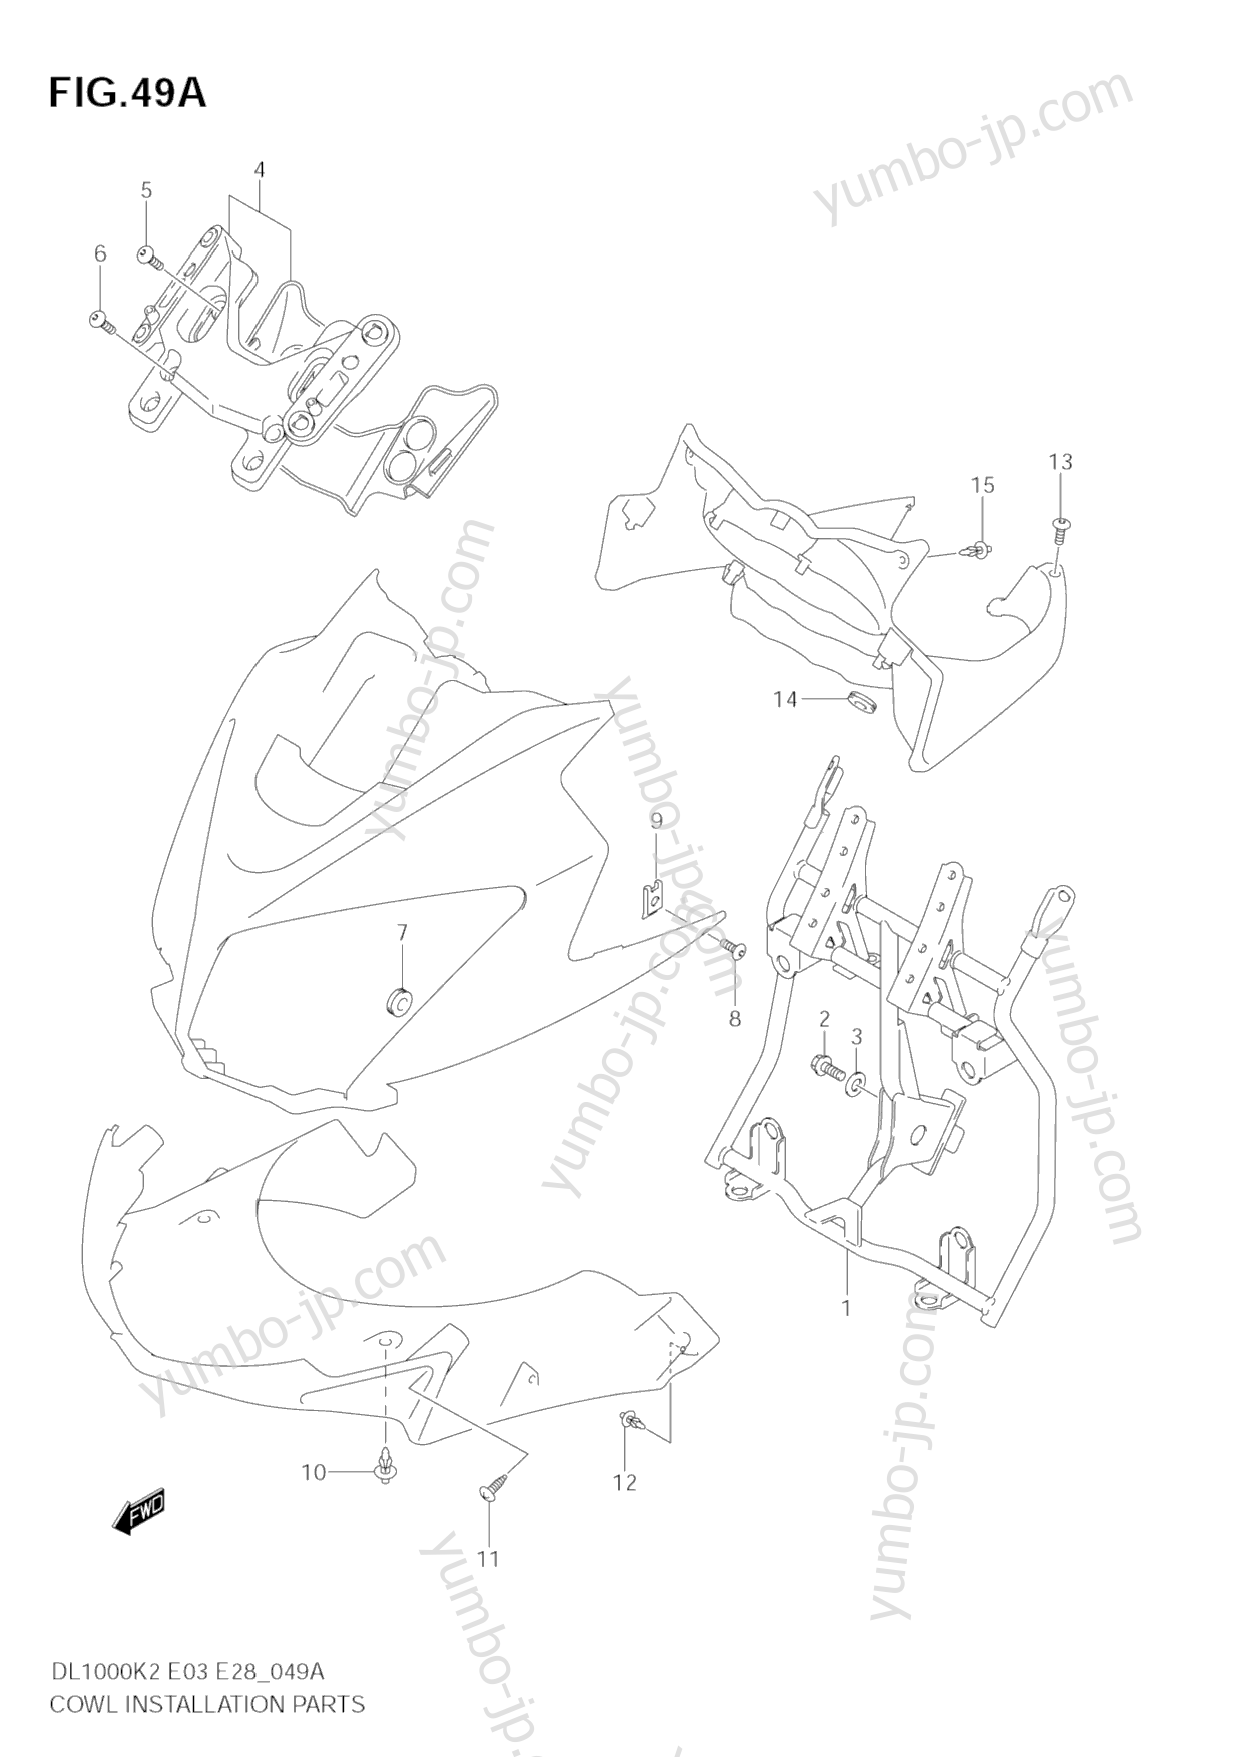 COWL BODY INSTALLATION PARTS (MODEL K4/K5/K6) for motorcycles SUZUKI V-Strom (DL1000) 2005 year